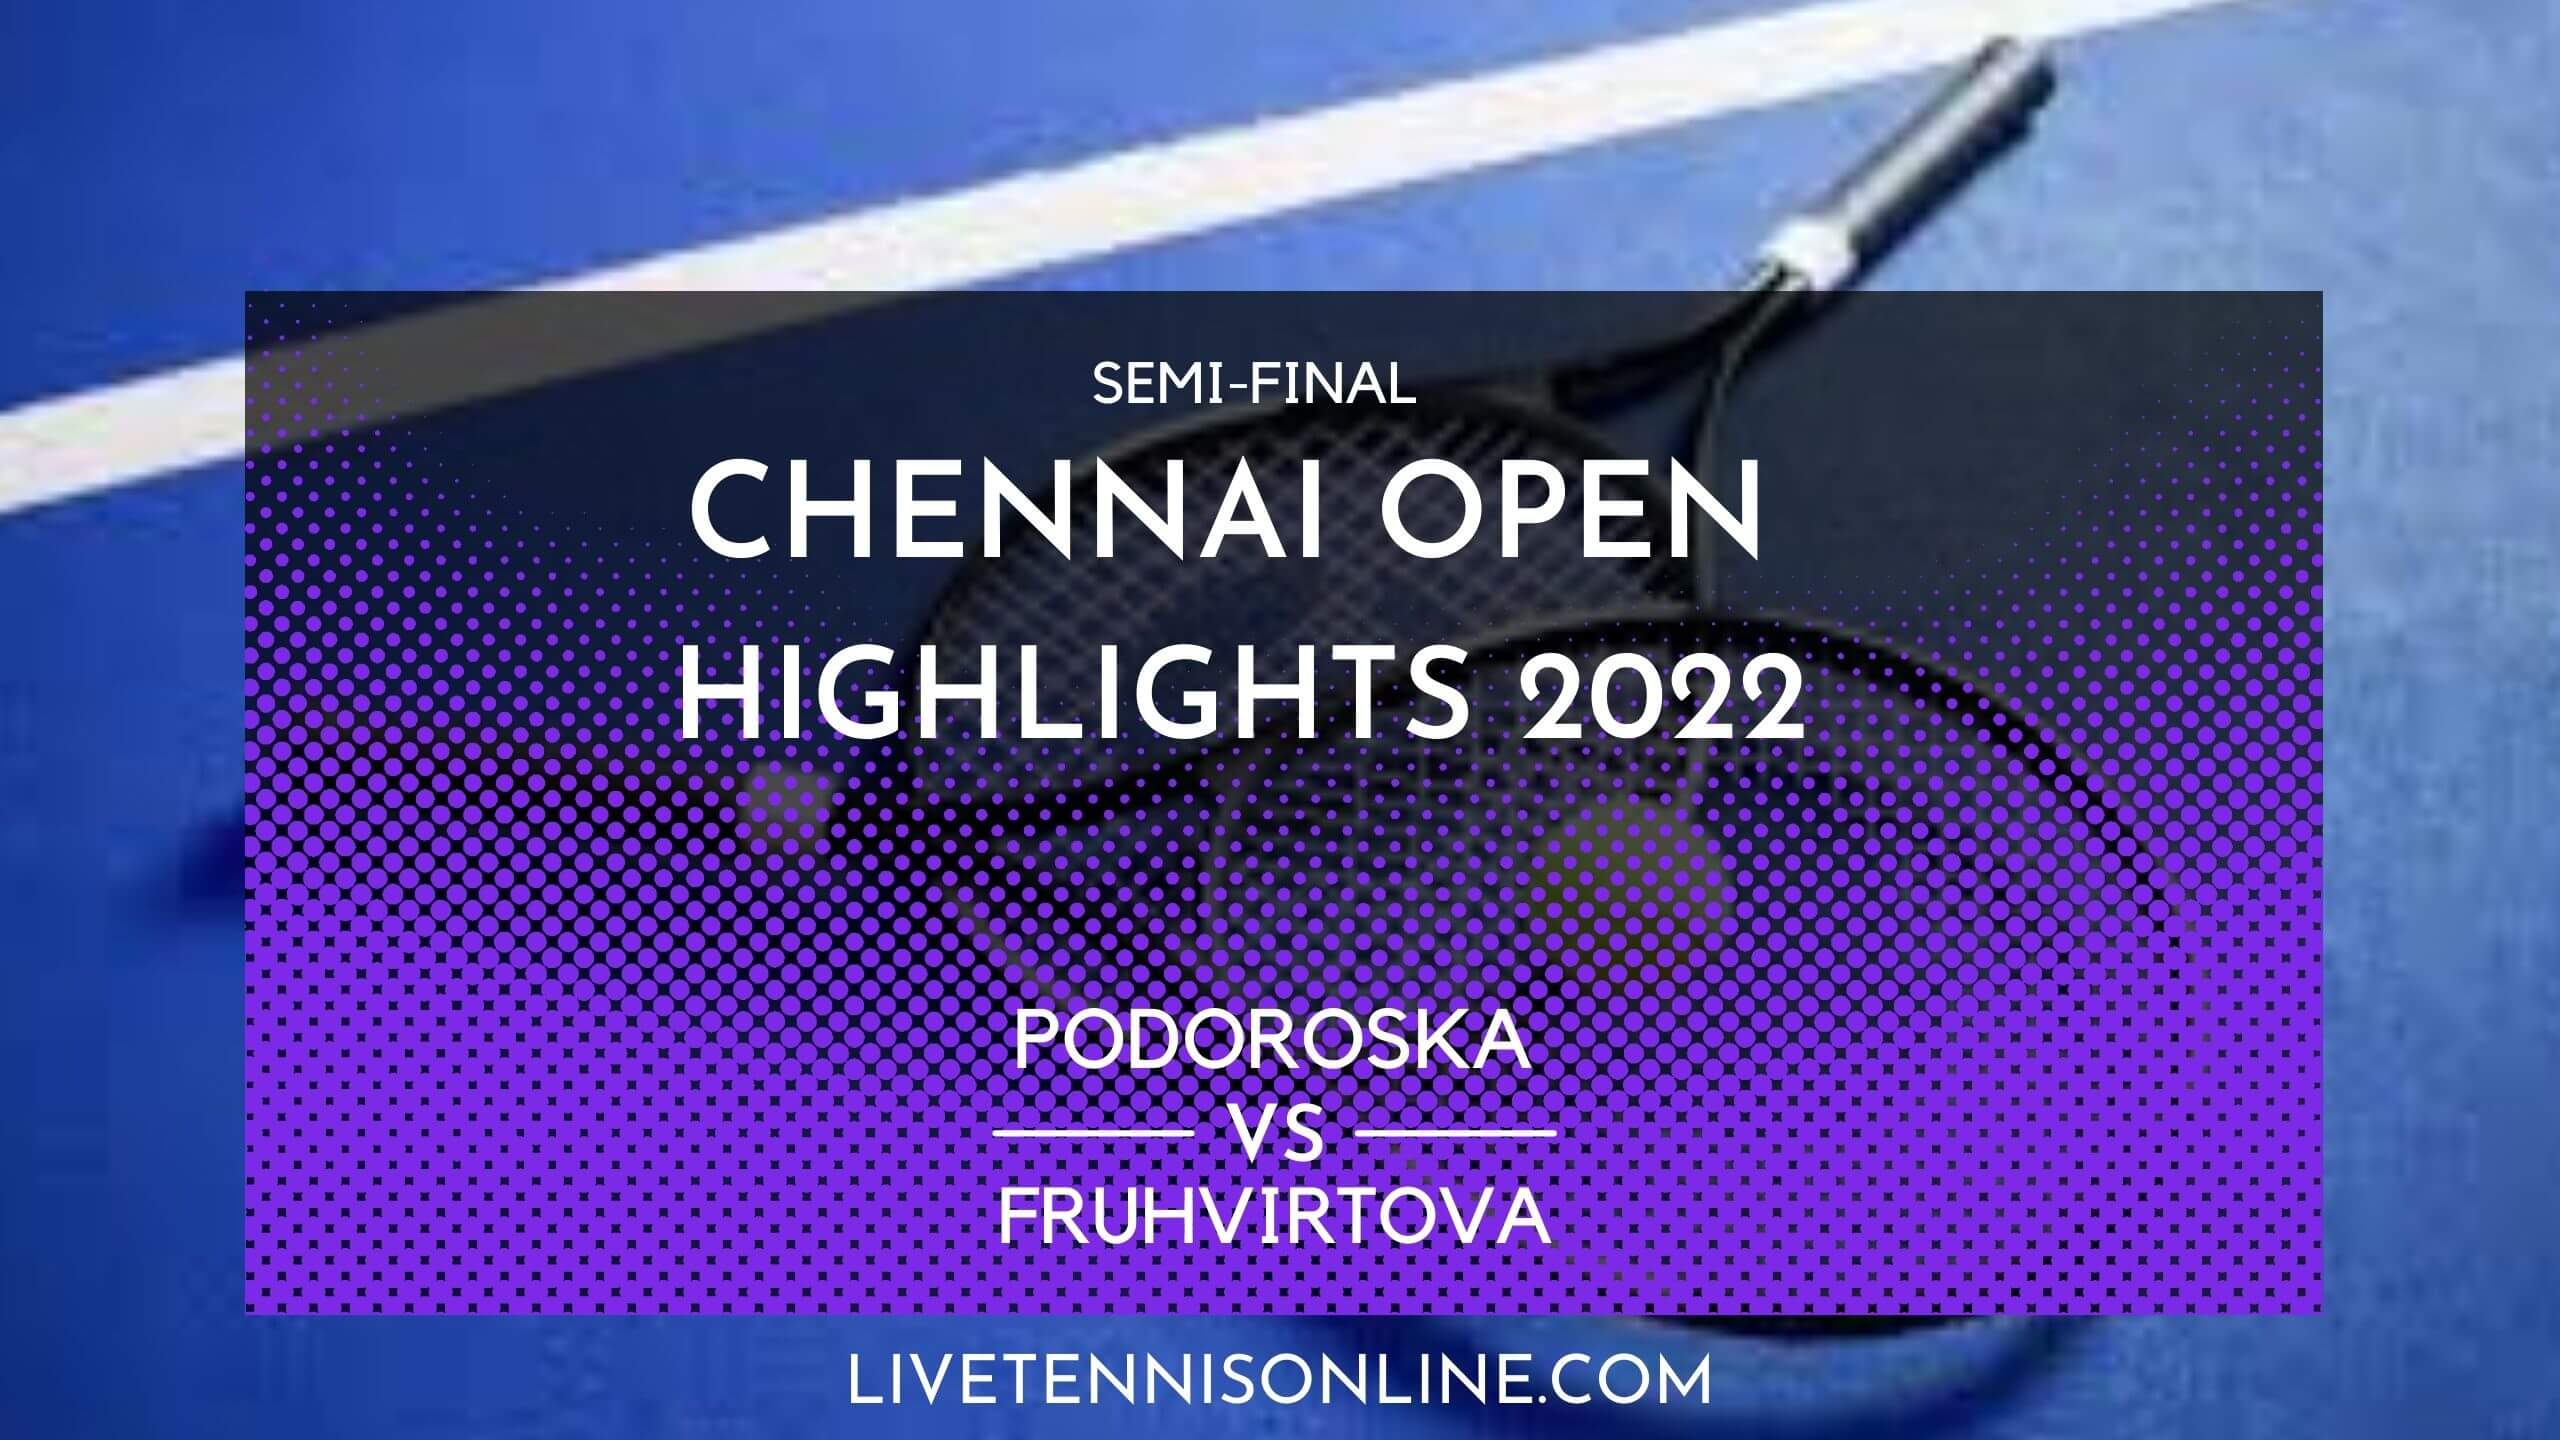 Podoroska Vs Fruhvirtova SF Highlights 2022 Chennai Open